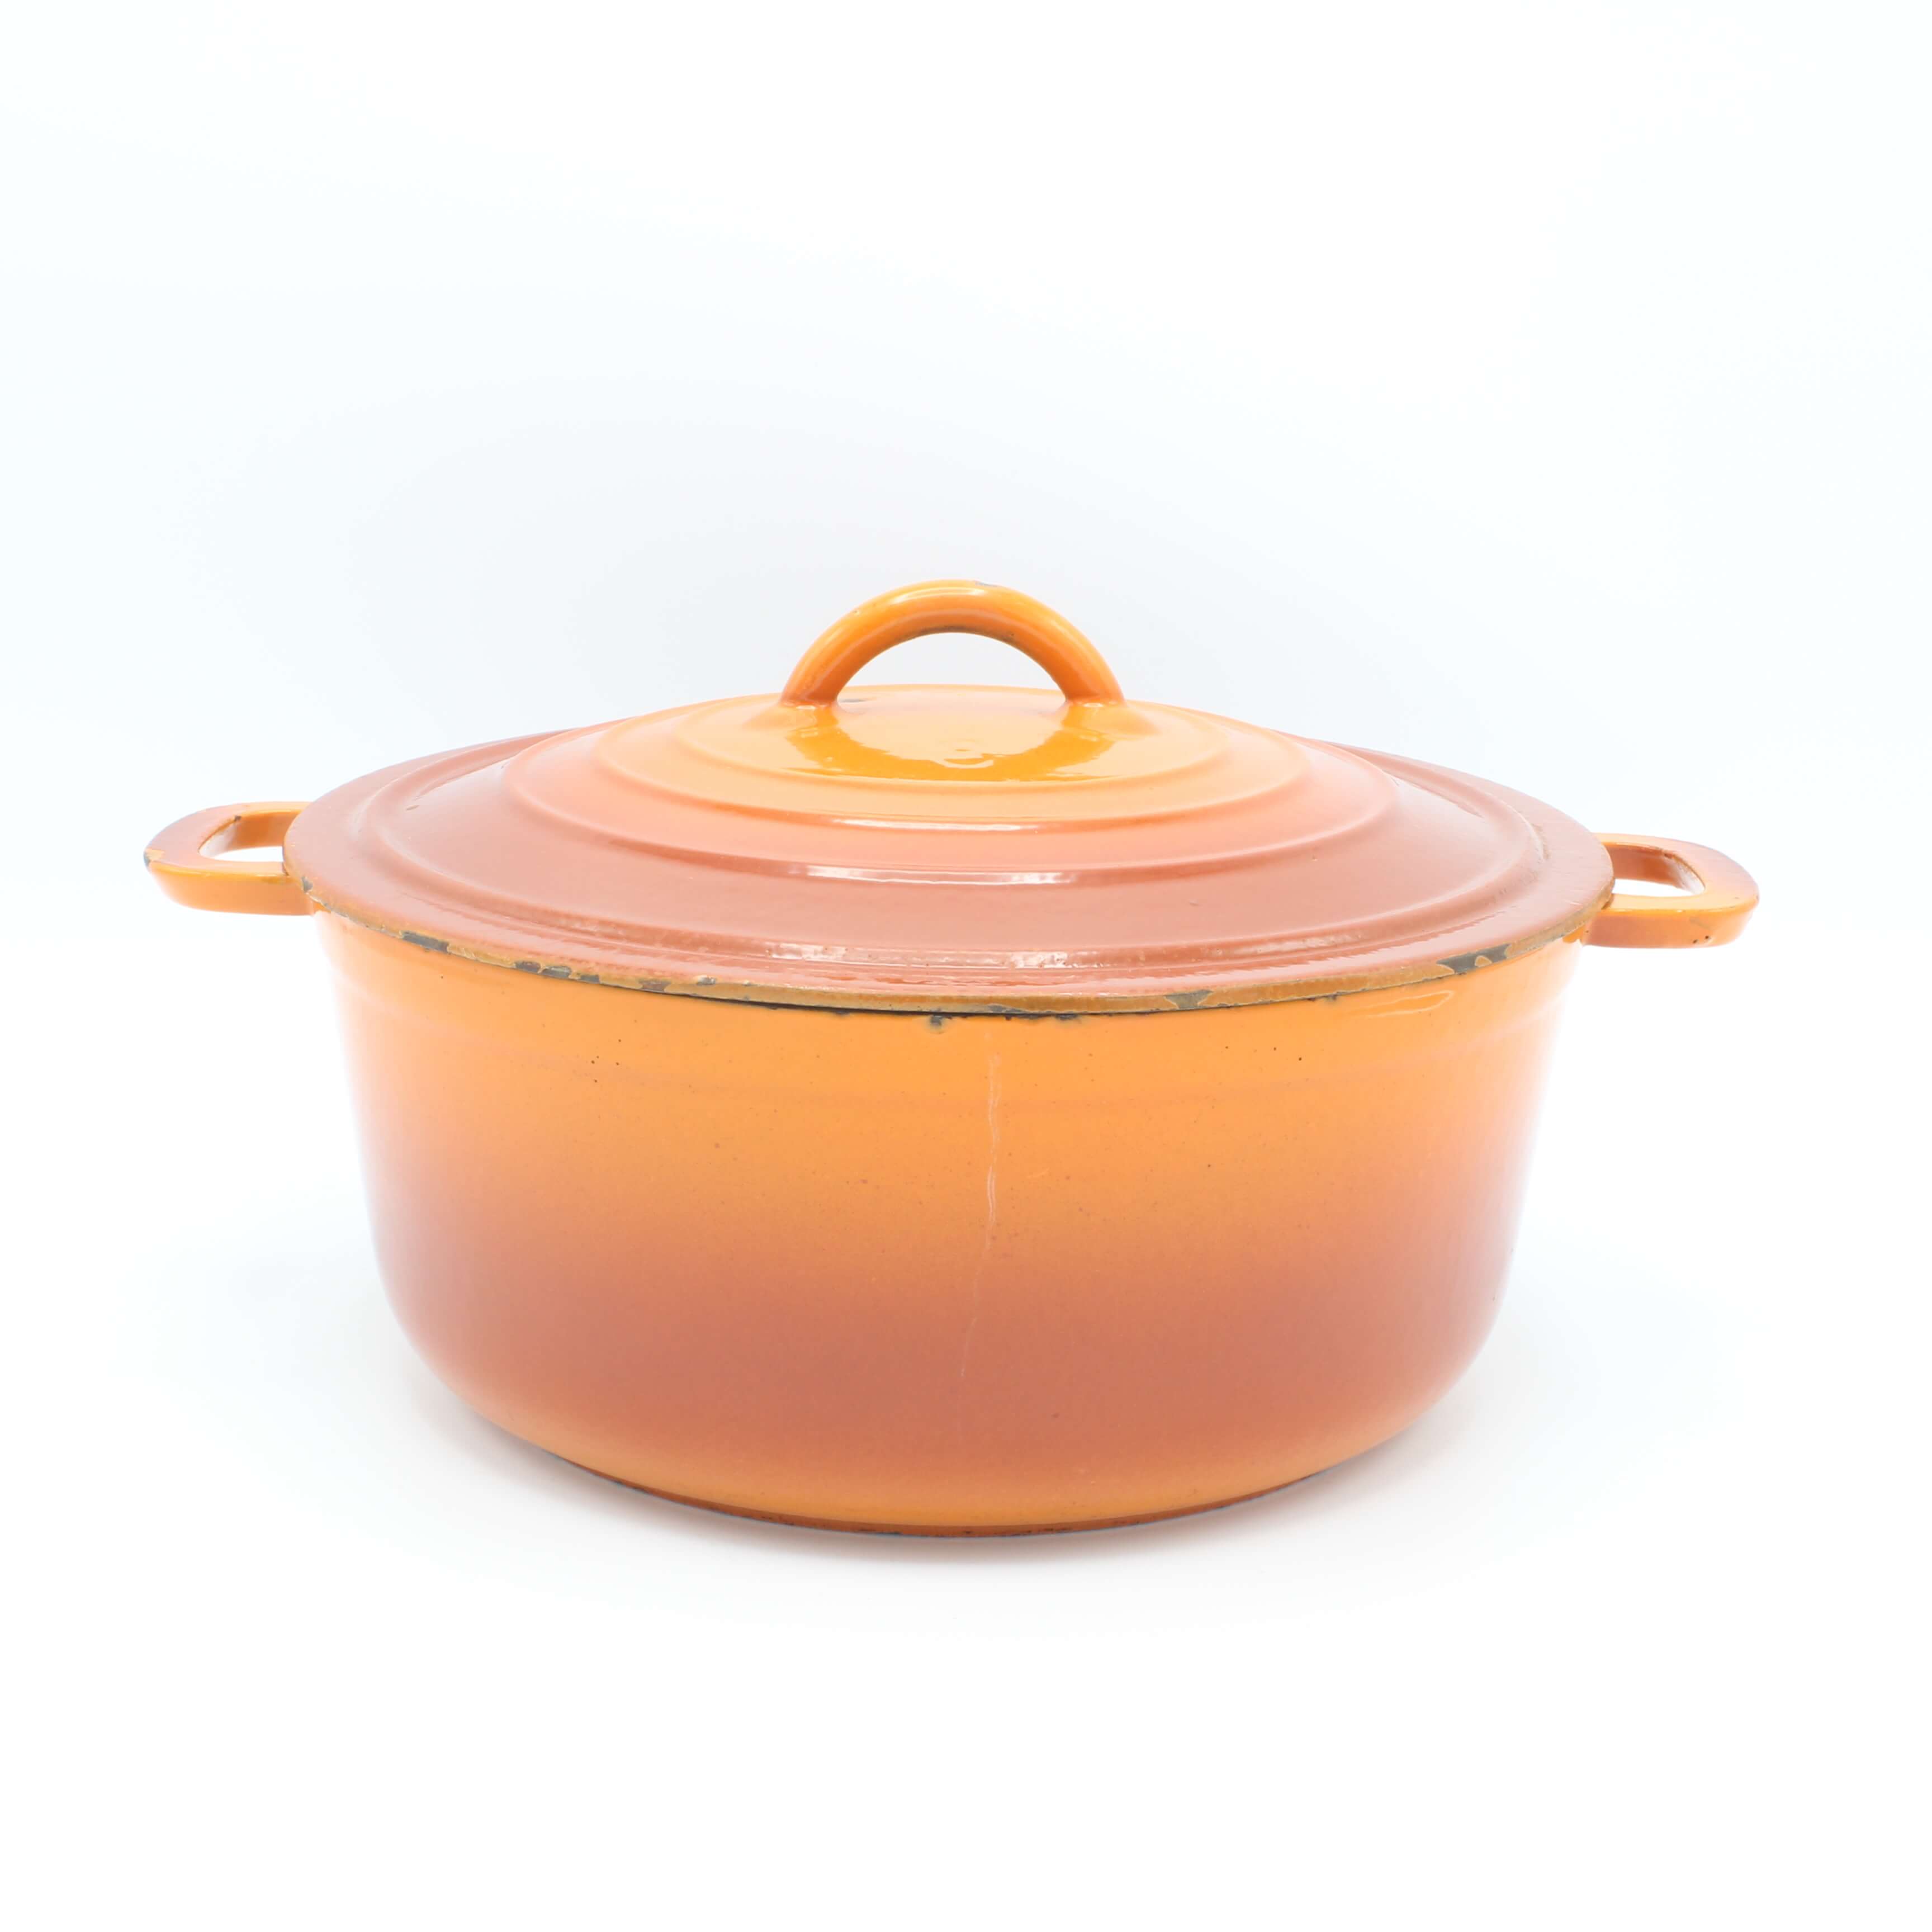 steenkool Janice beetje DRU gietijzeren braadpan, No.8 oranjerood 22 cm - Gaer Cookware